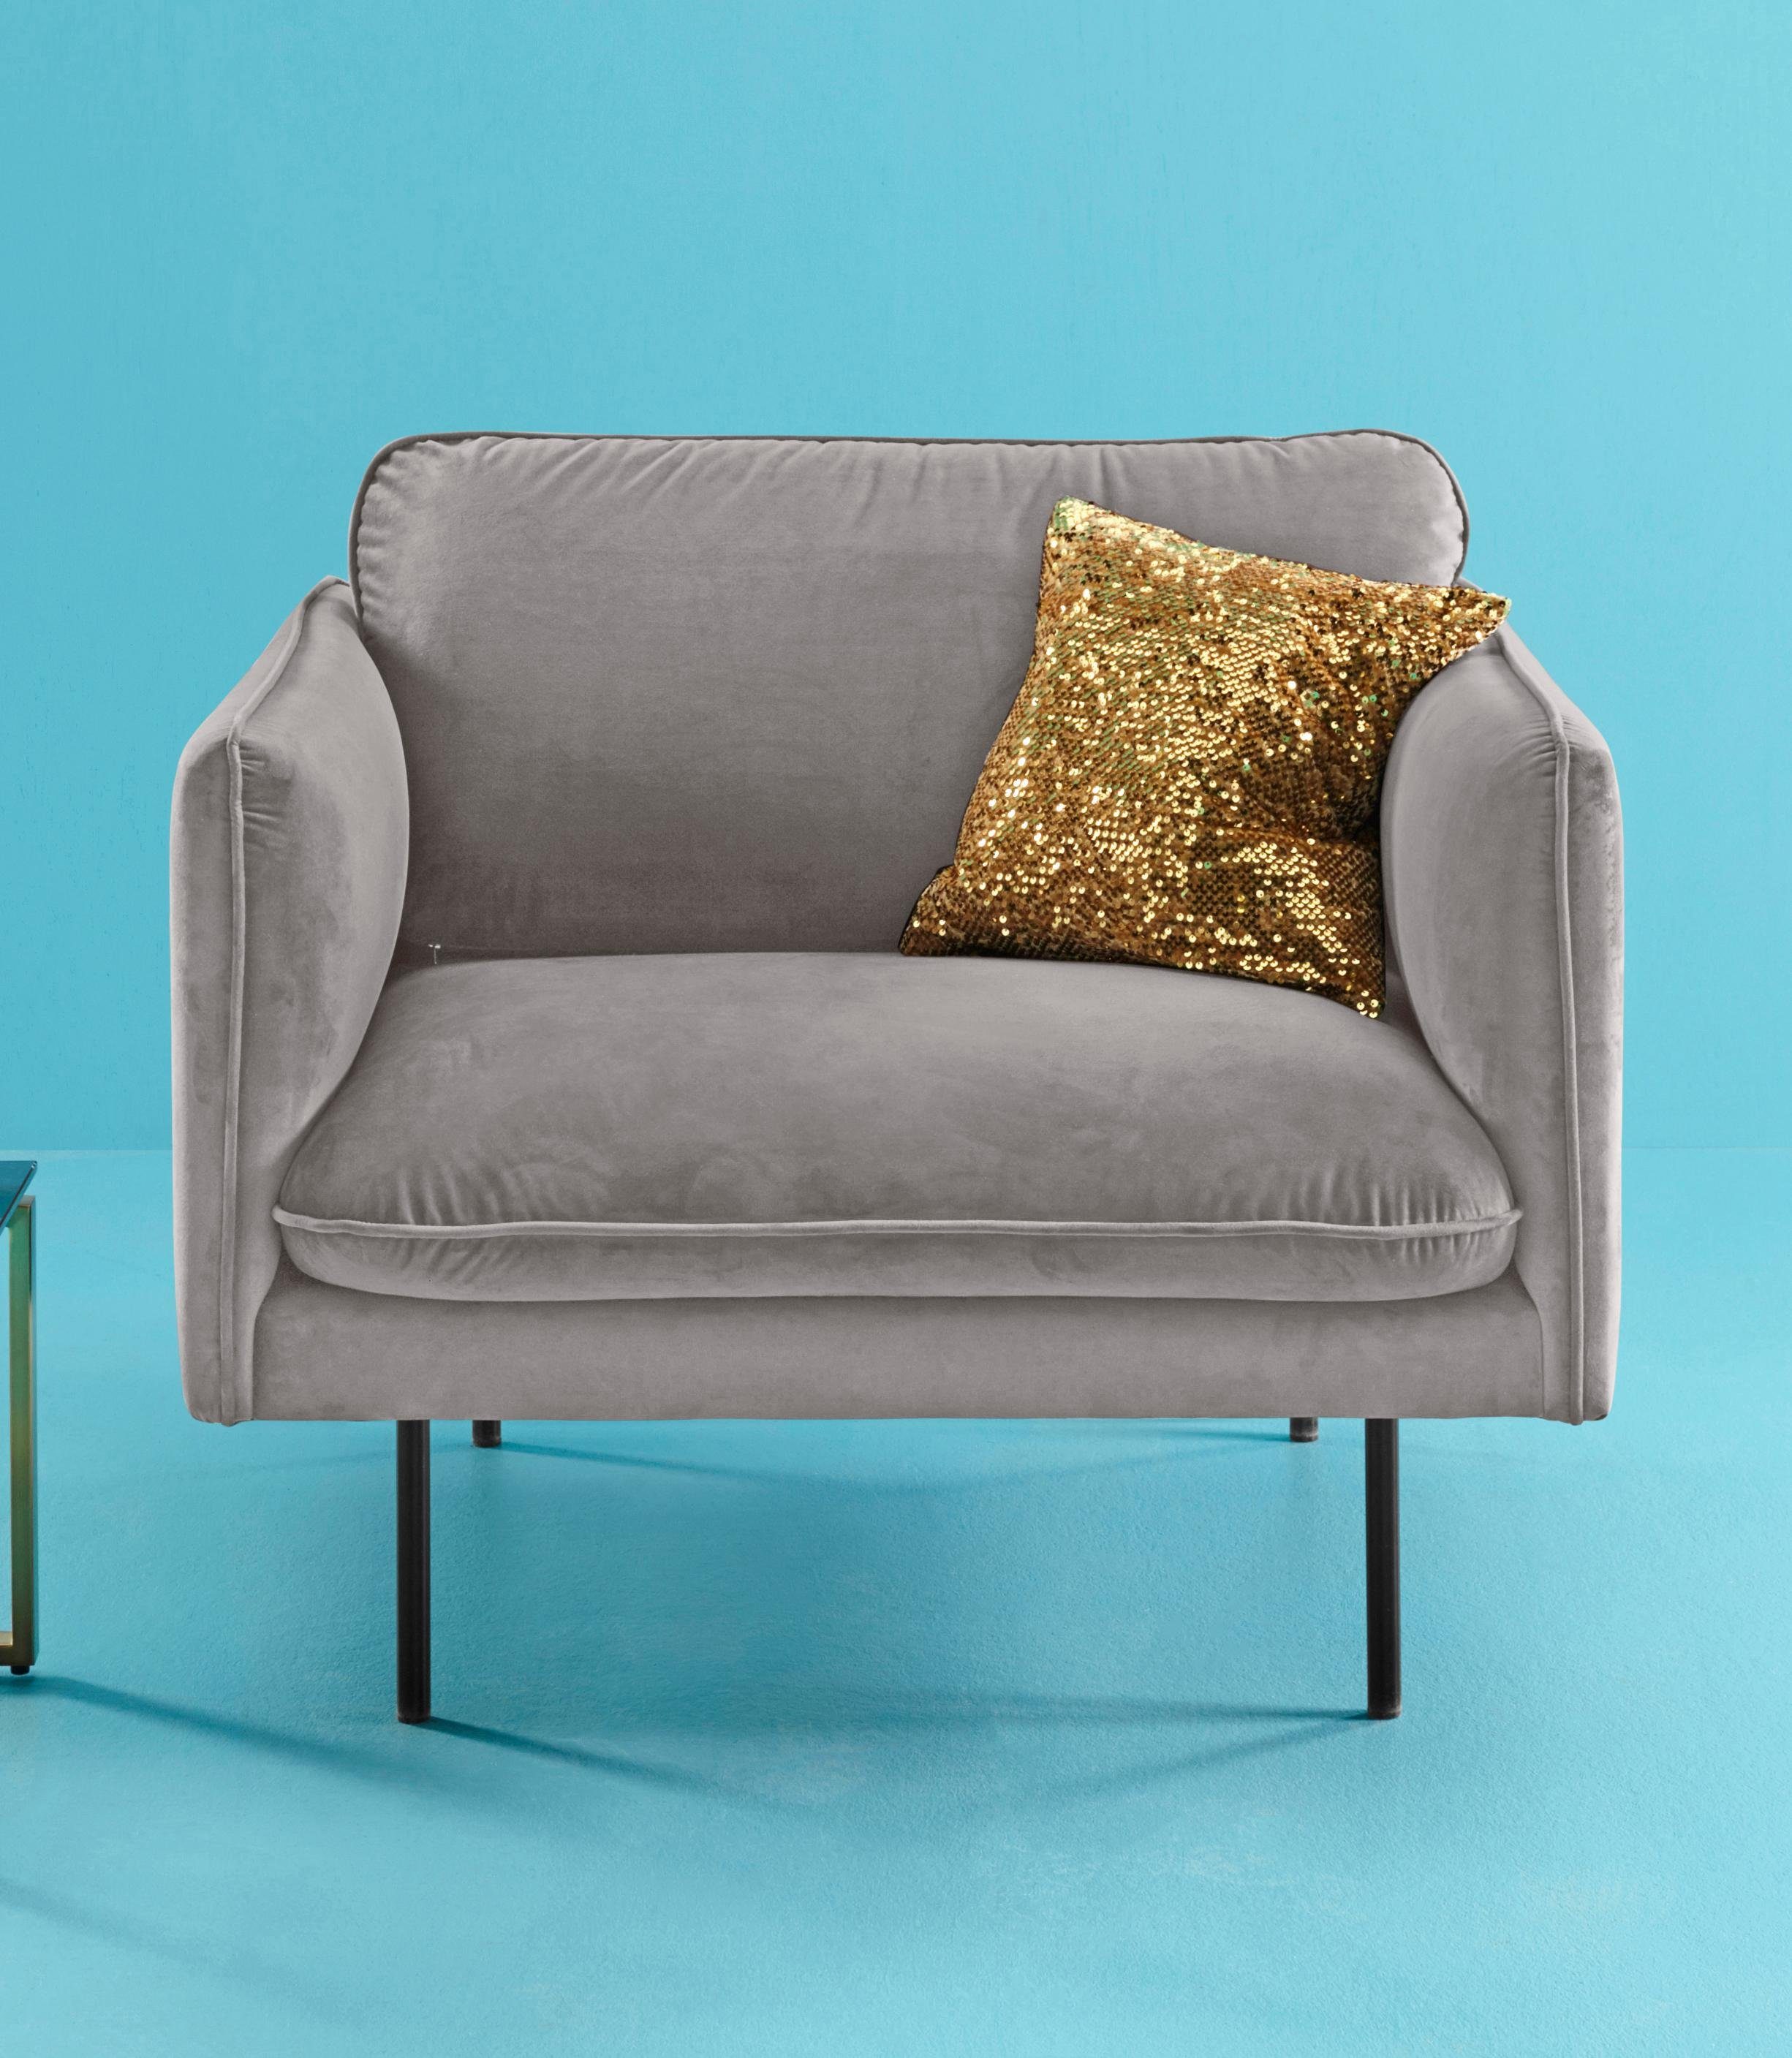 COUCH ♥ Fauteuil Levon in een moderne look, met metalen poten, couch favorieten